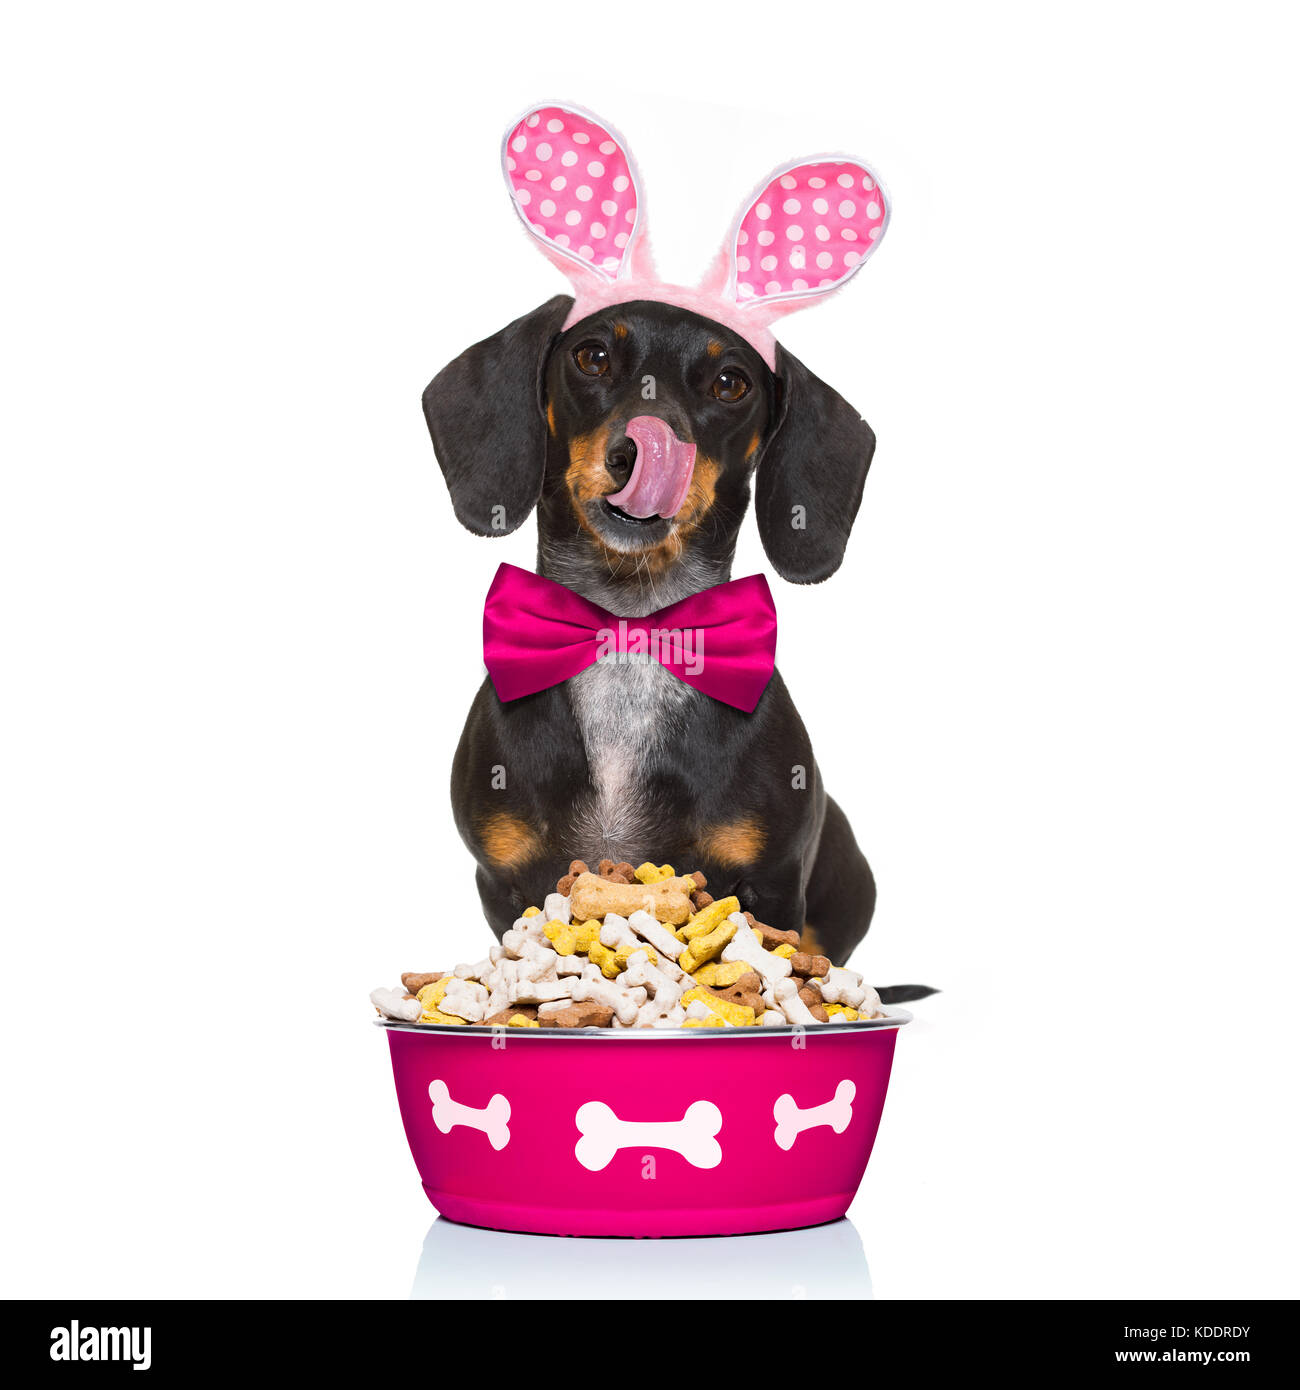 Osterhasen Ohren dackel Wurst Hund, hungrig mit hinter Essen Schüssel, auf  weißem Hintergrund, lecken mit der Zunge Stockfotografie - Alamy